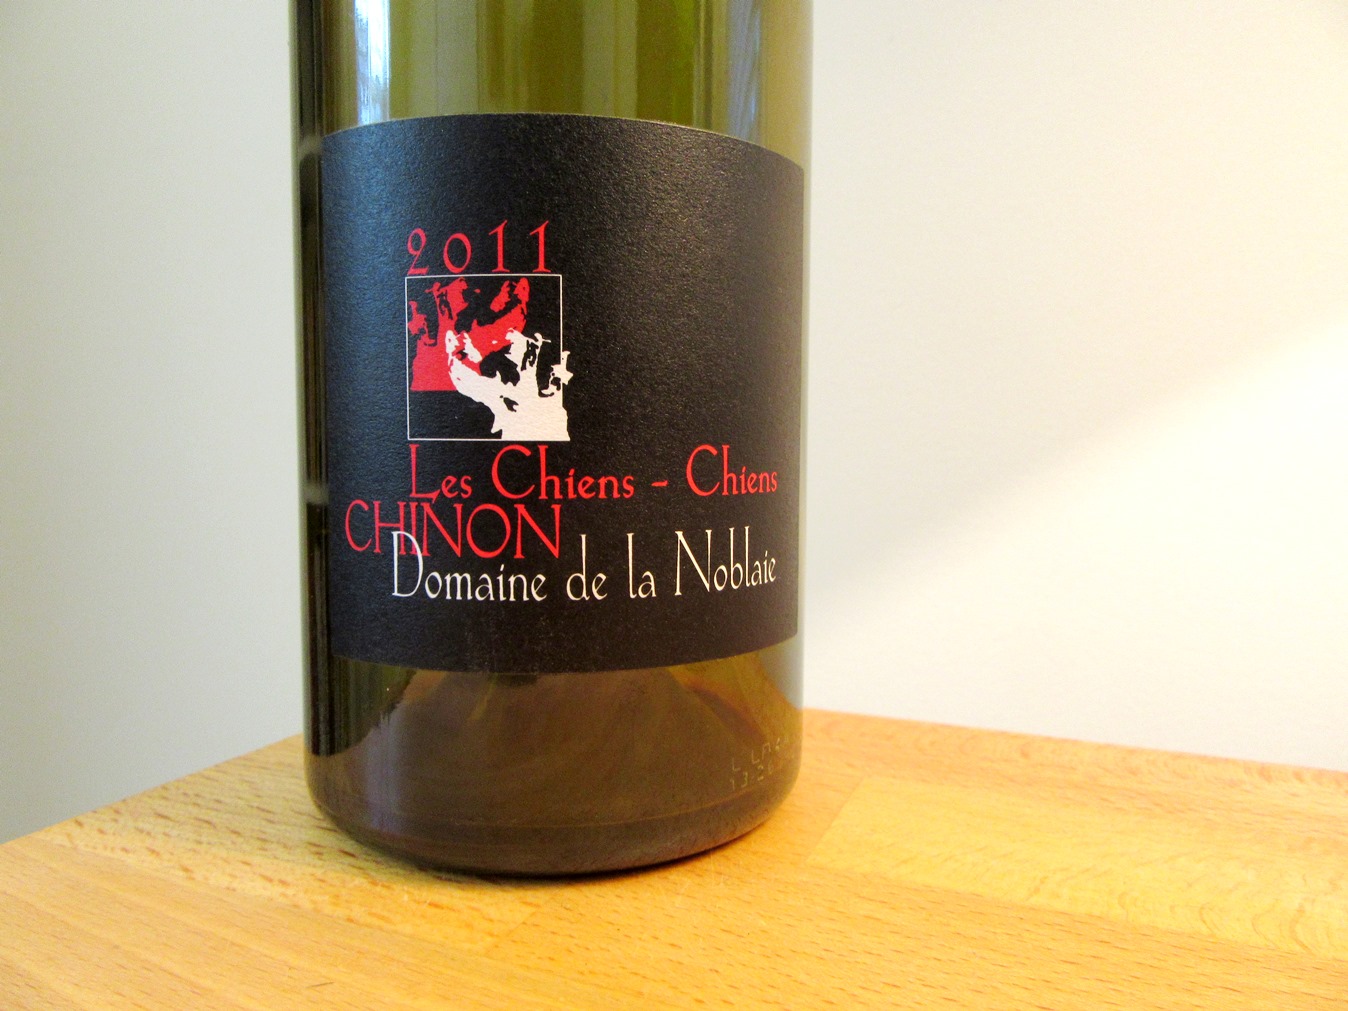 Domaine de la Noblaie, Les Chiens-Chiens Chinon 2011, Loire, France, Wine Casual